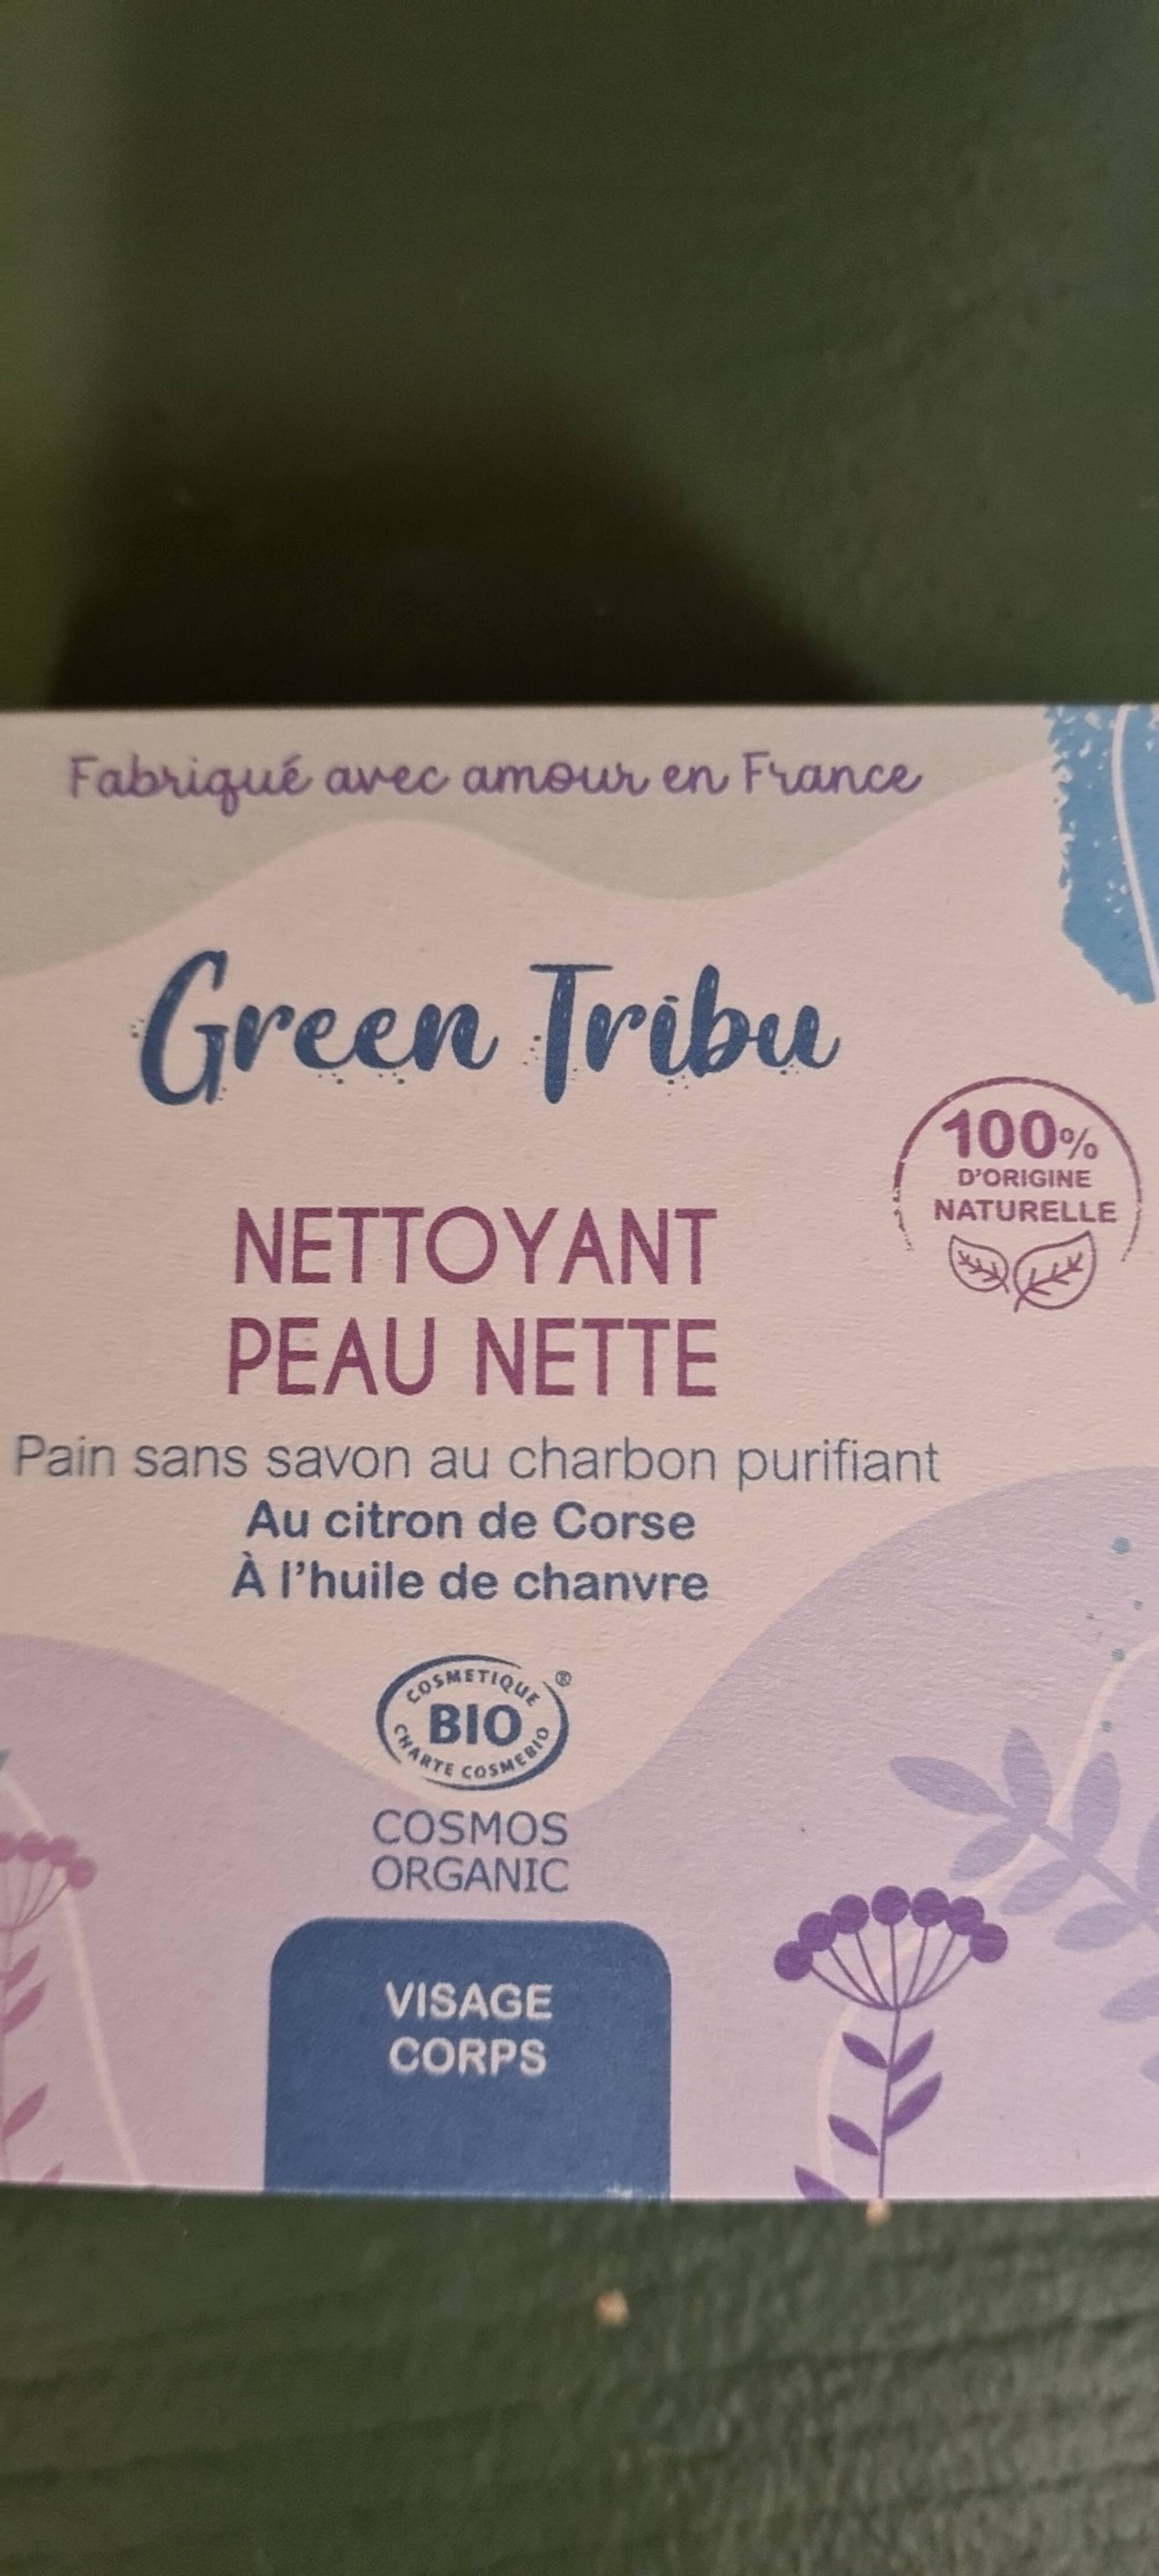 GREEN TRIBU - Nettoyant peau nette 